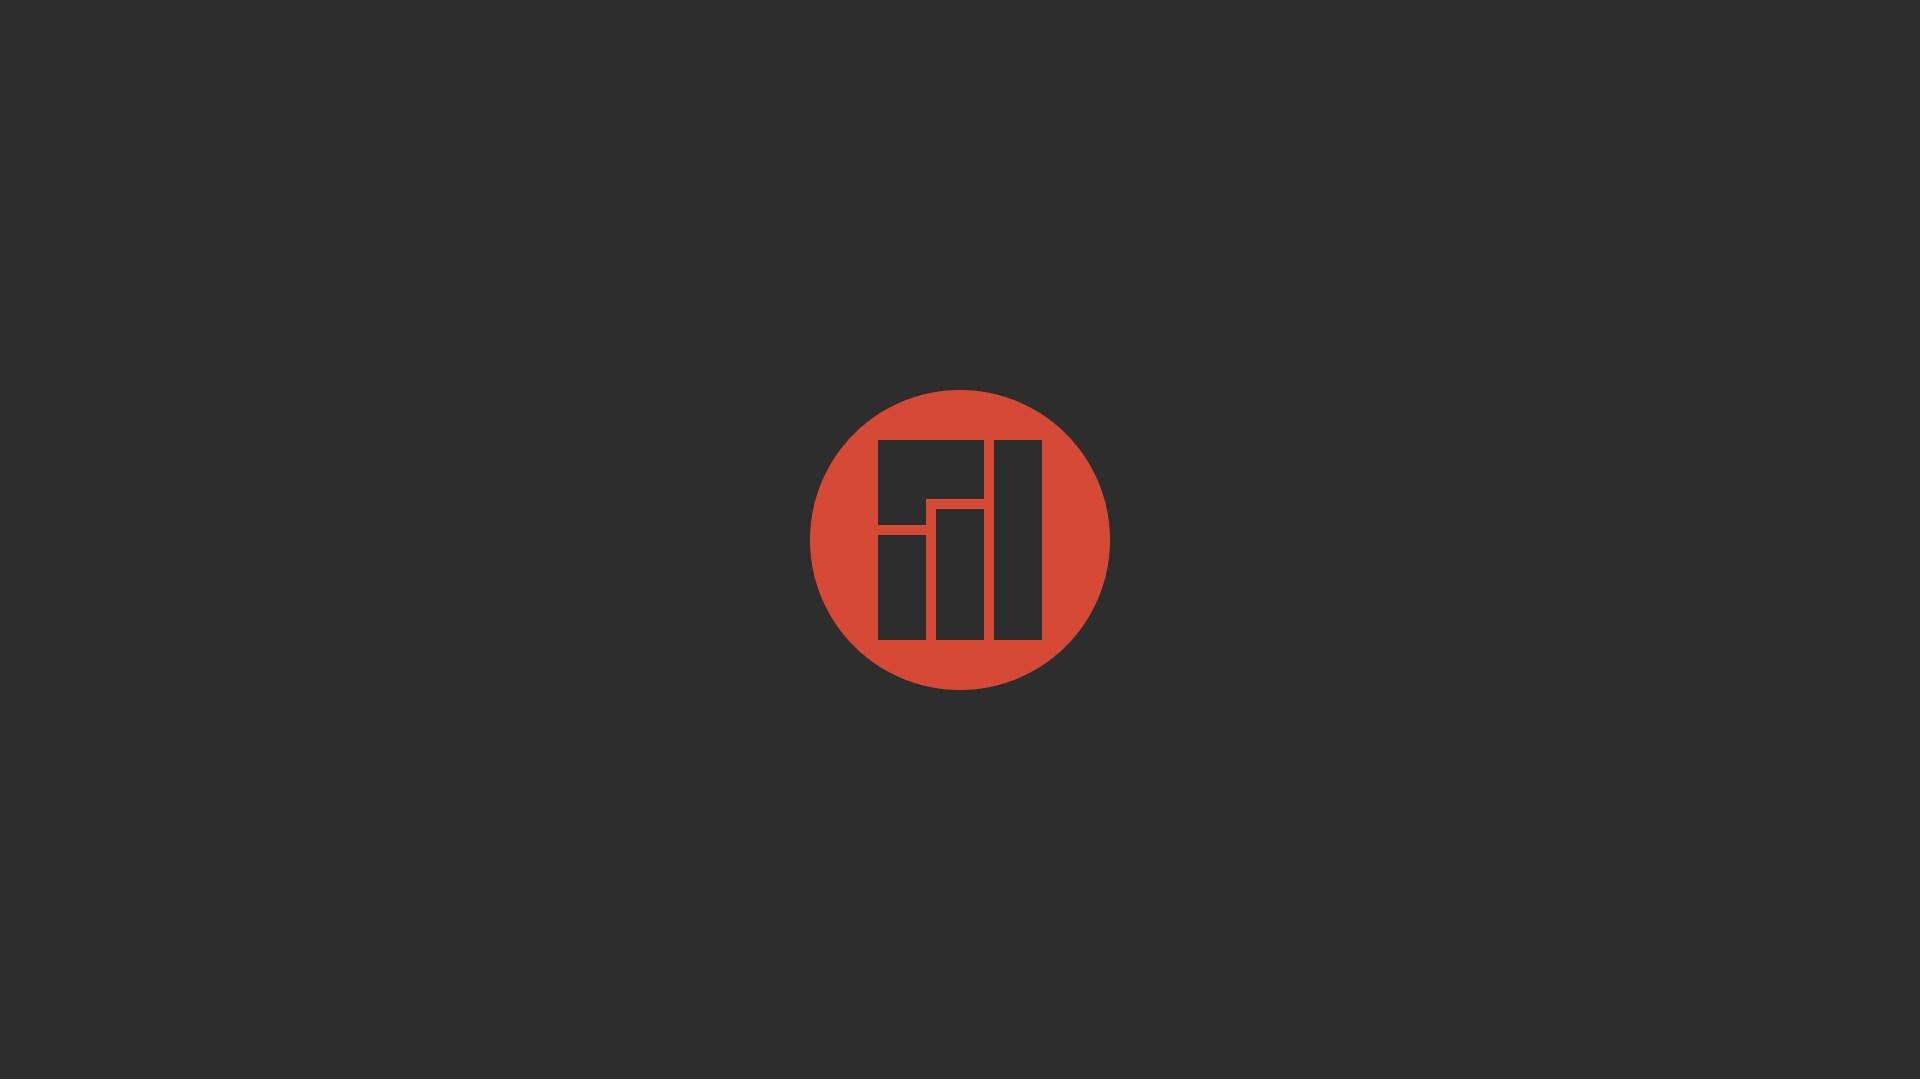 1114627 minimalism text logo Linux circle brand Manjaro nin